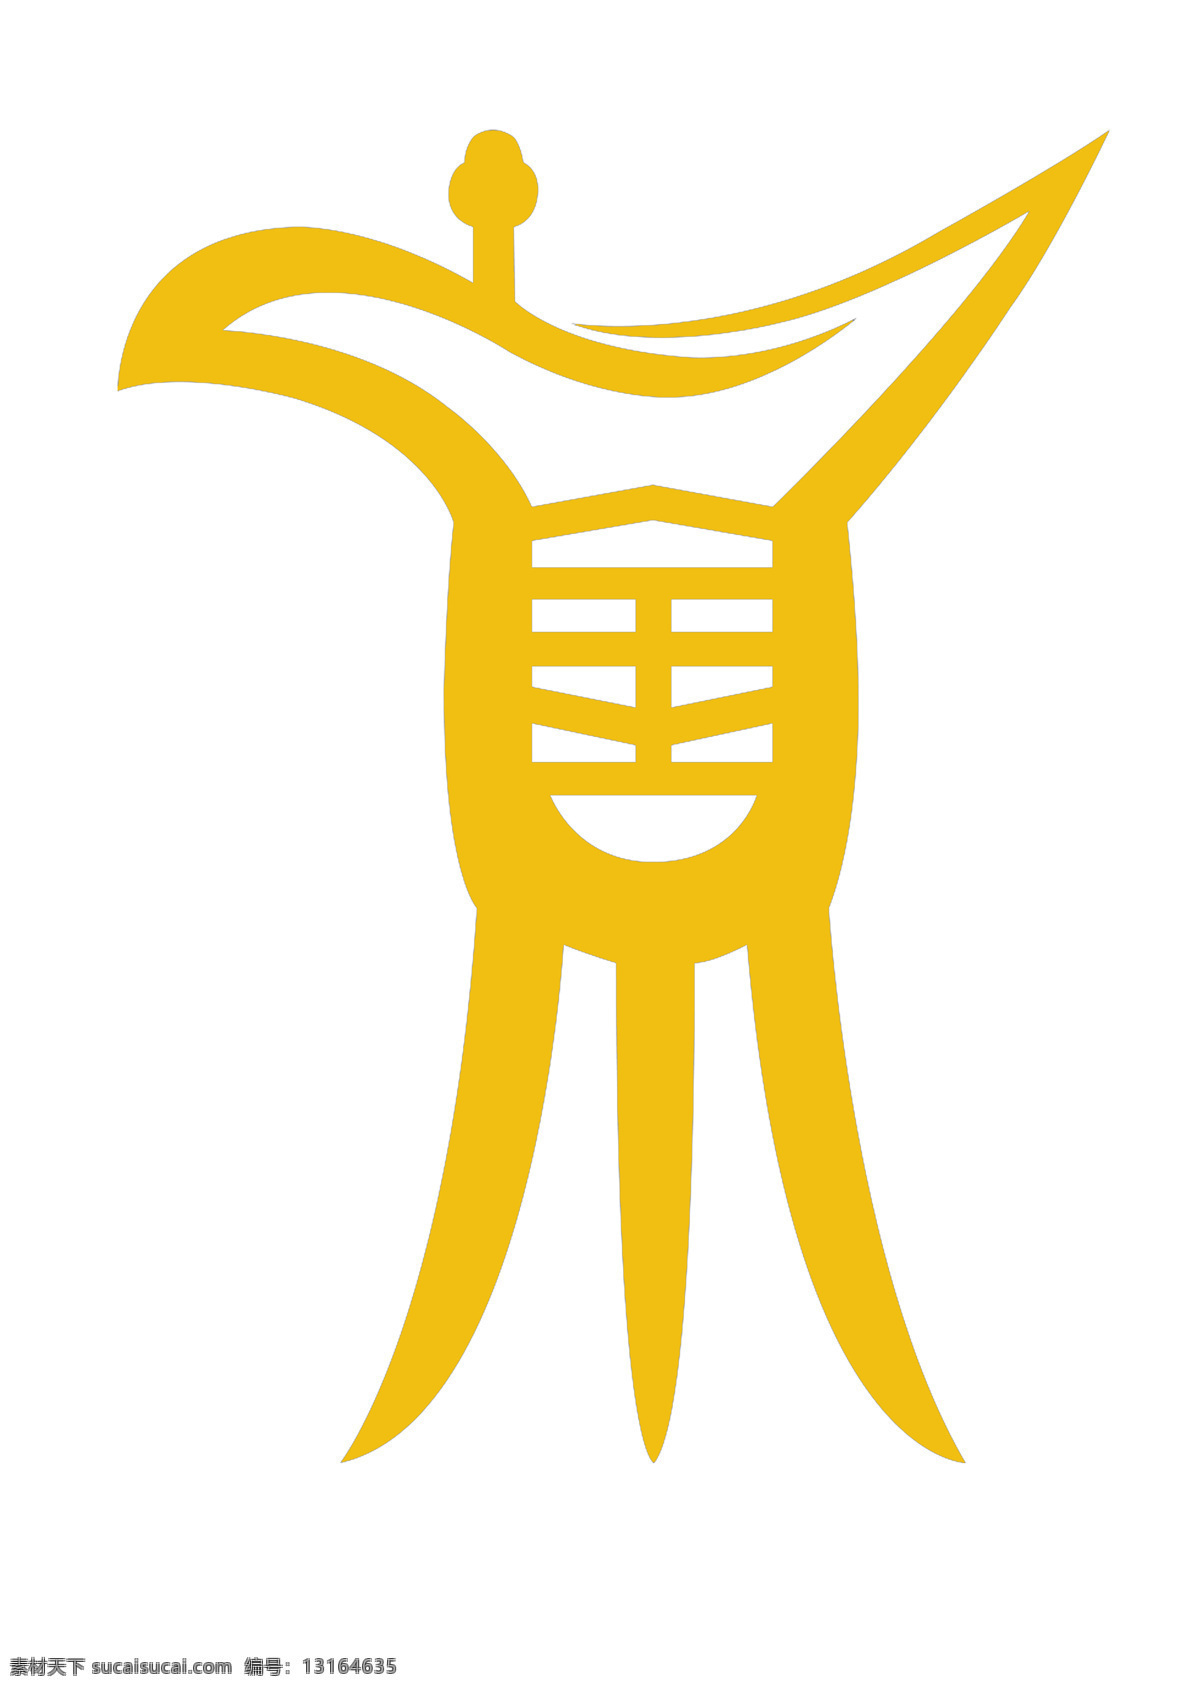 原创 金樽 标志 logo logo设计